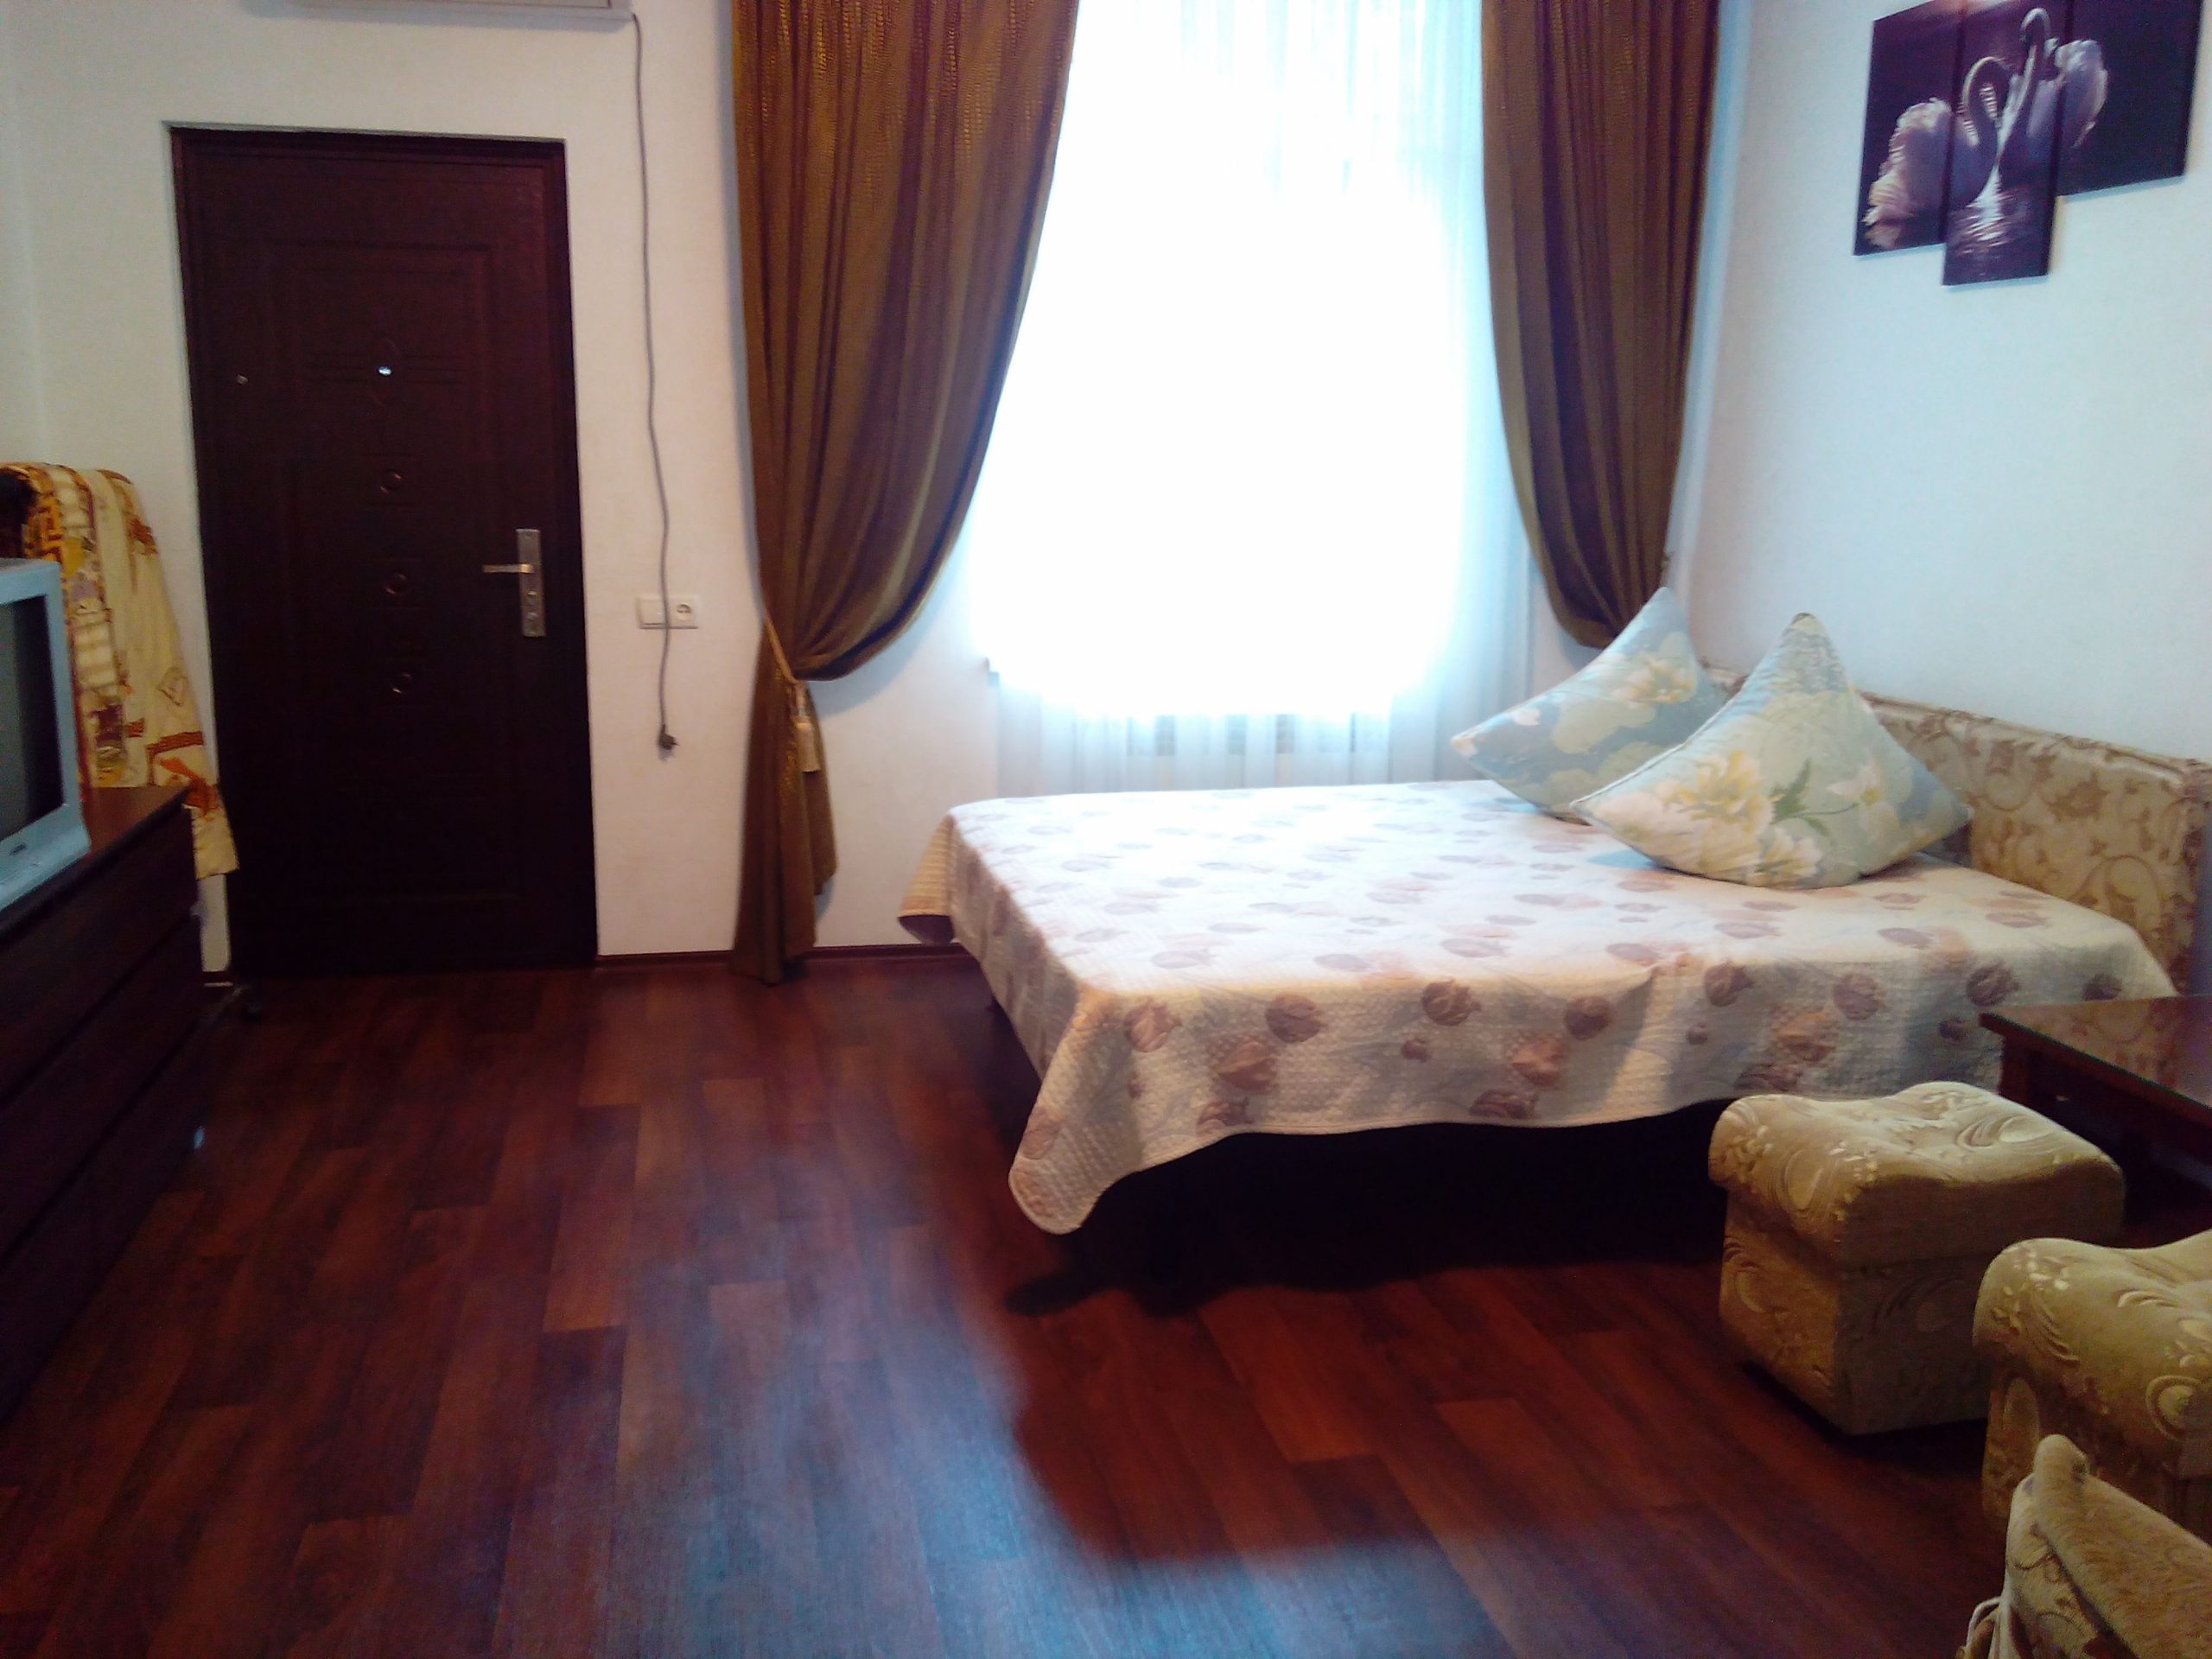 Однокомнатная квартира на ул. Ломоносова д.11 (24кв.м)до 4 гостей